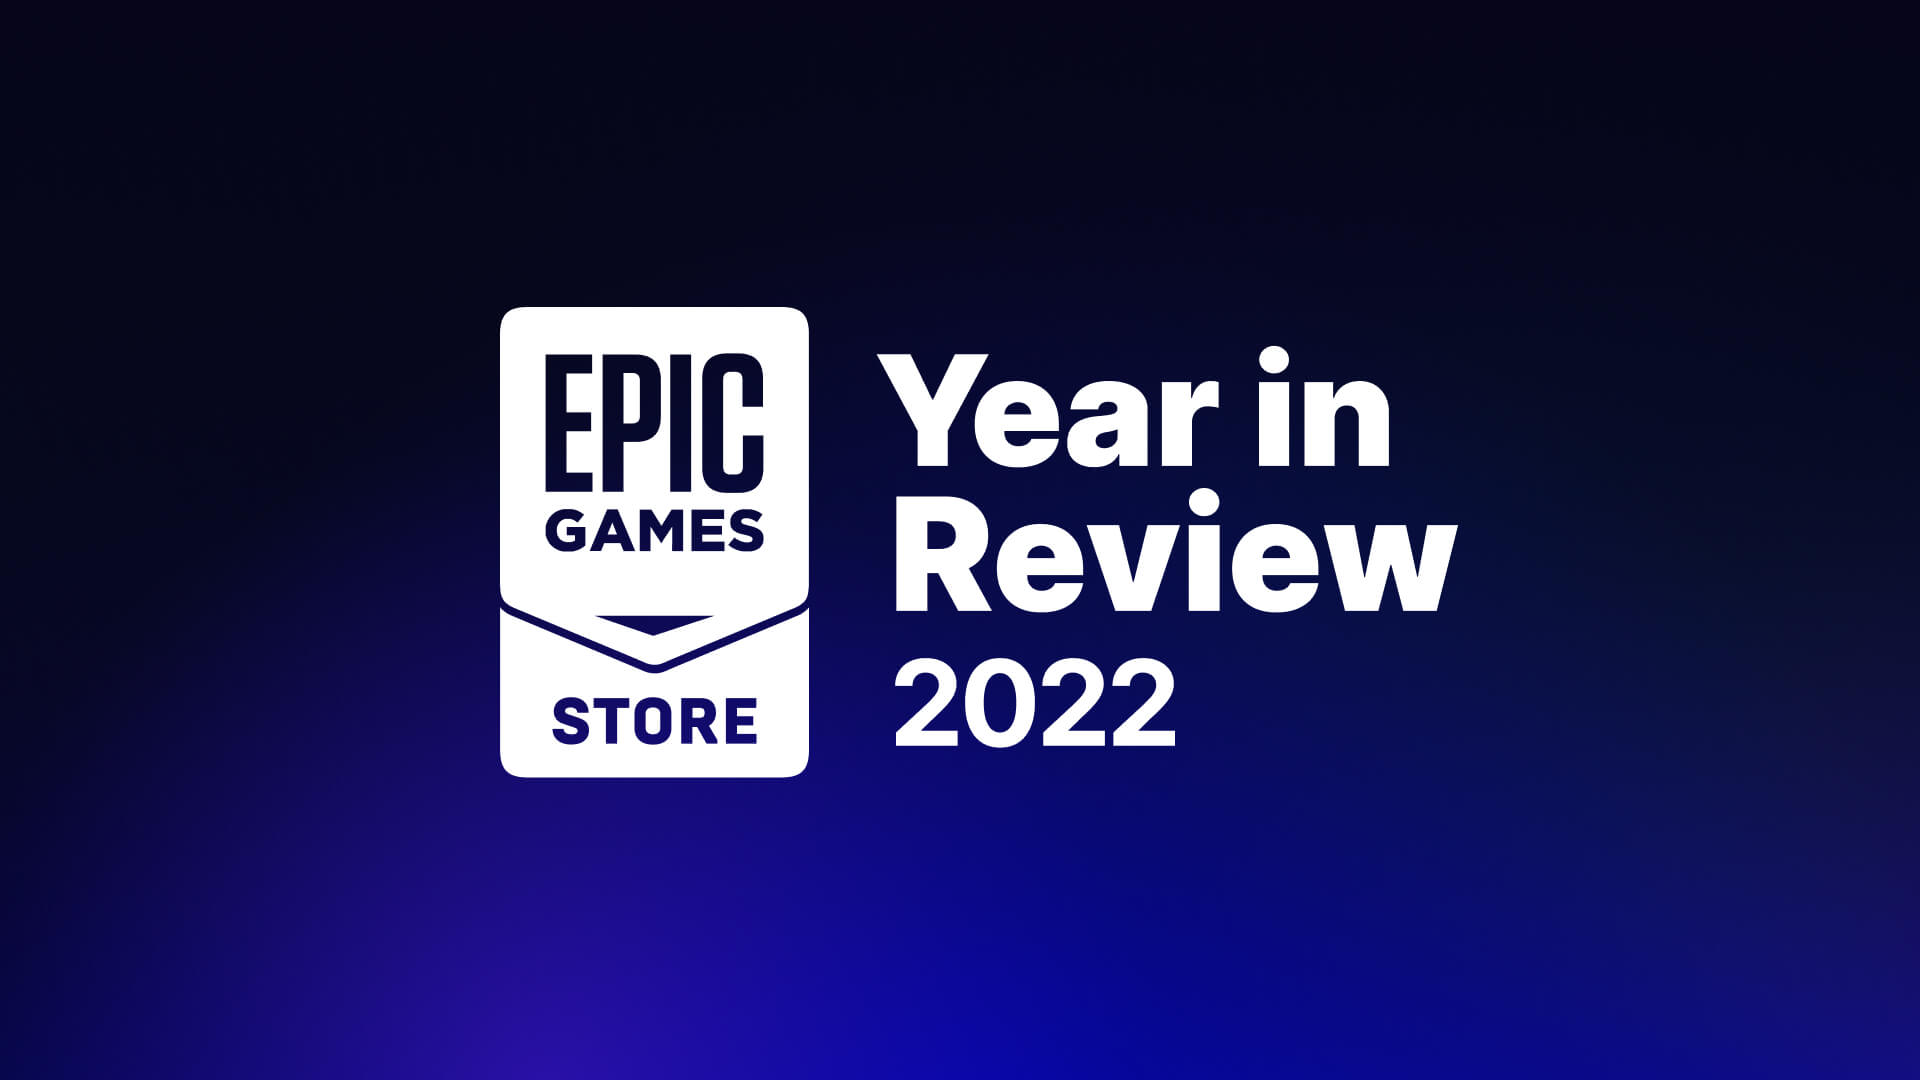 Os maiores jogos para PC com lançamento em 2022 - Epic Games Store